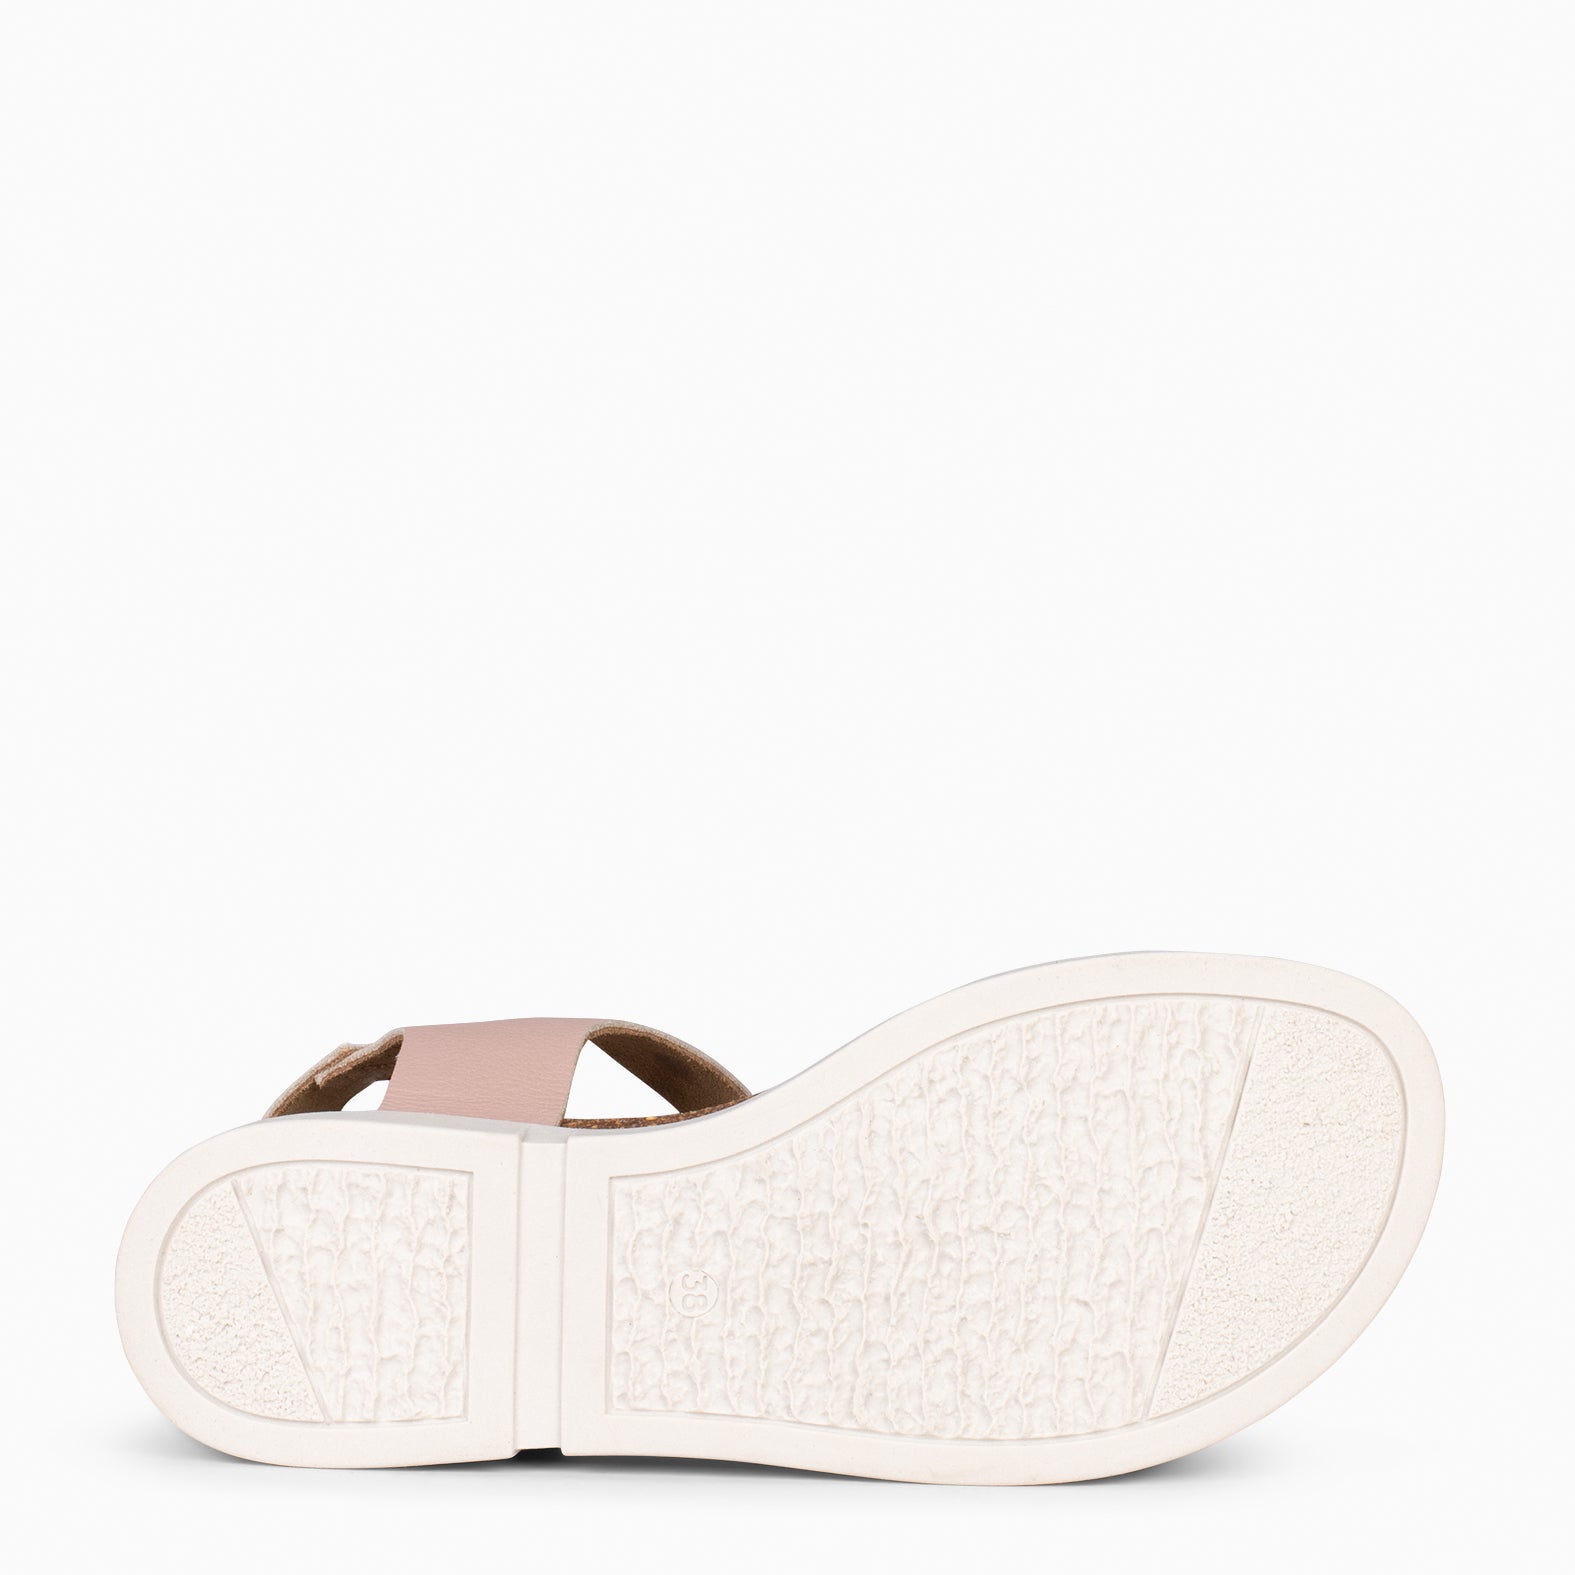 ARALIA – NUDE comfortable flat sandal